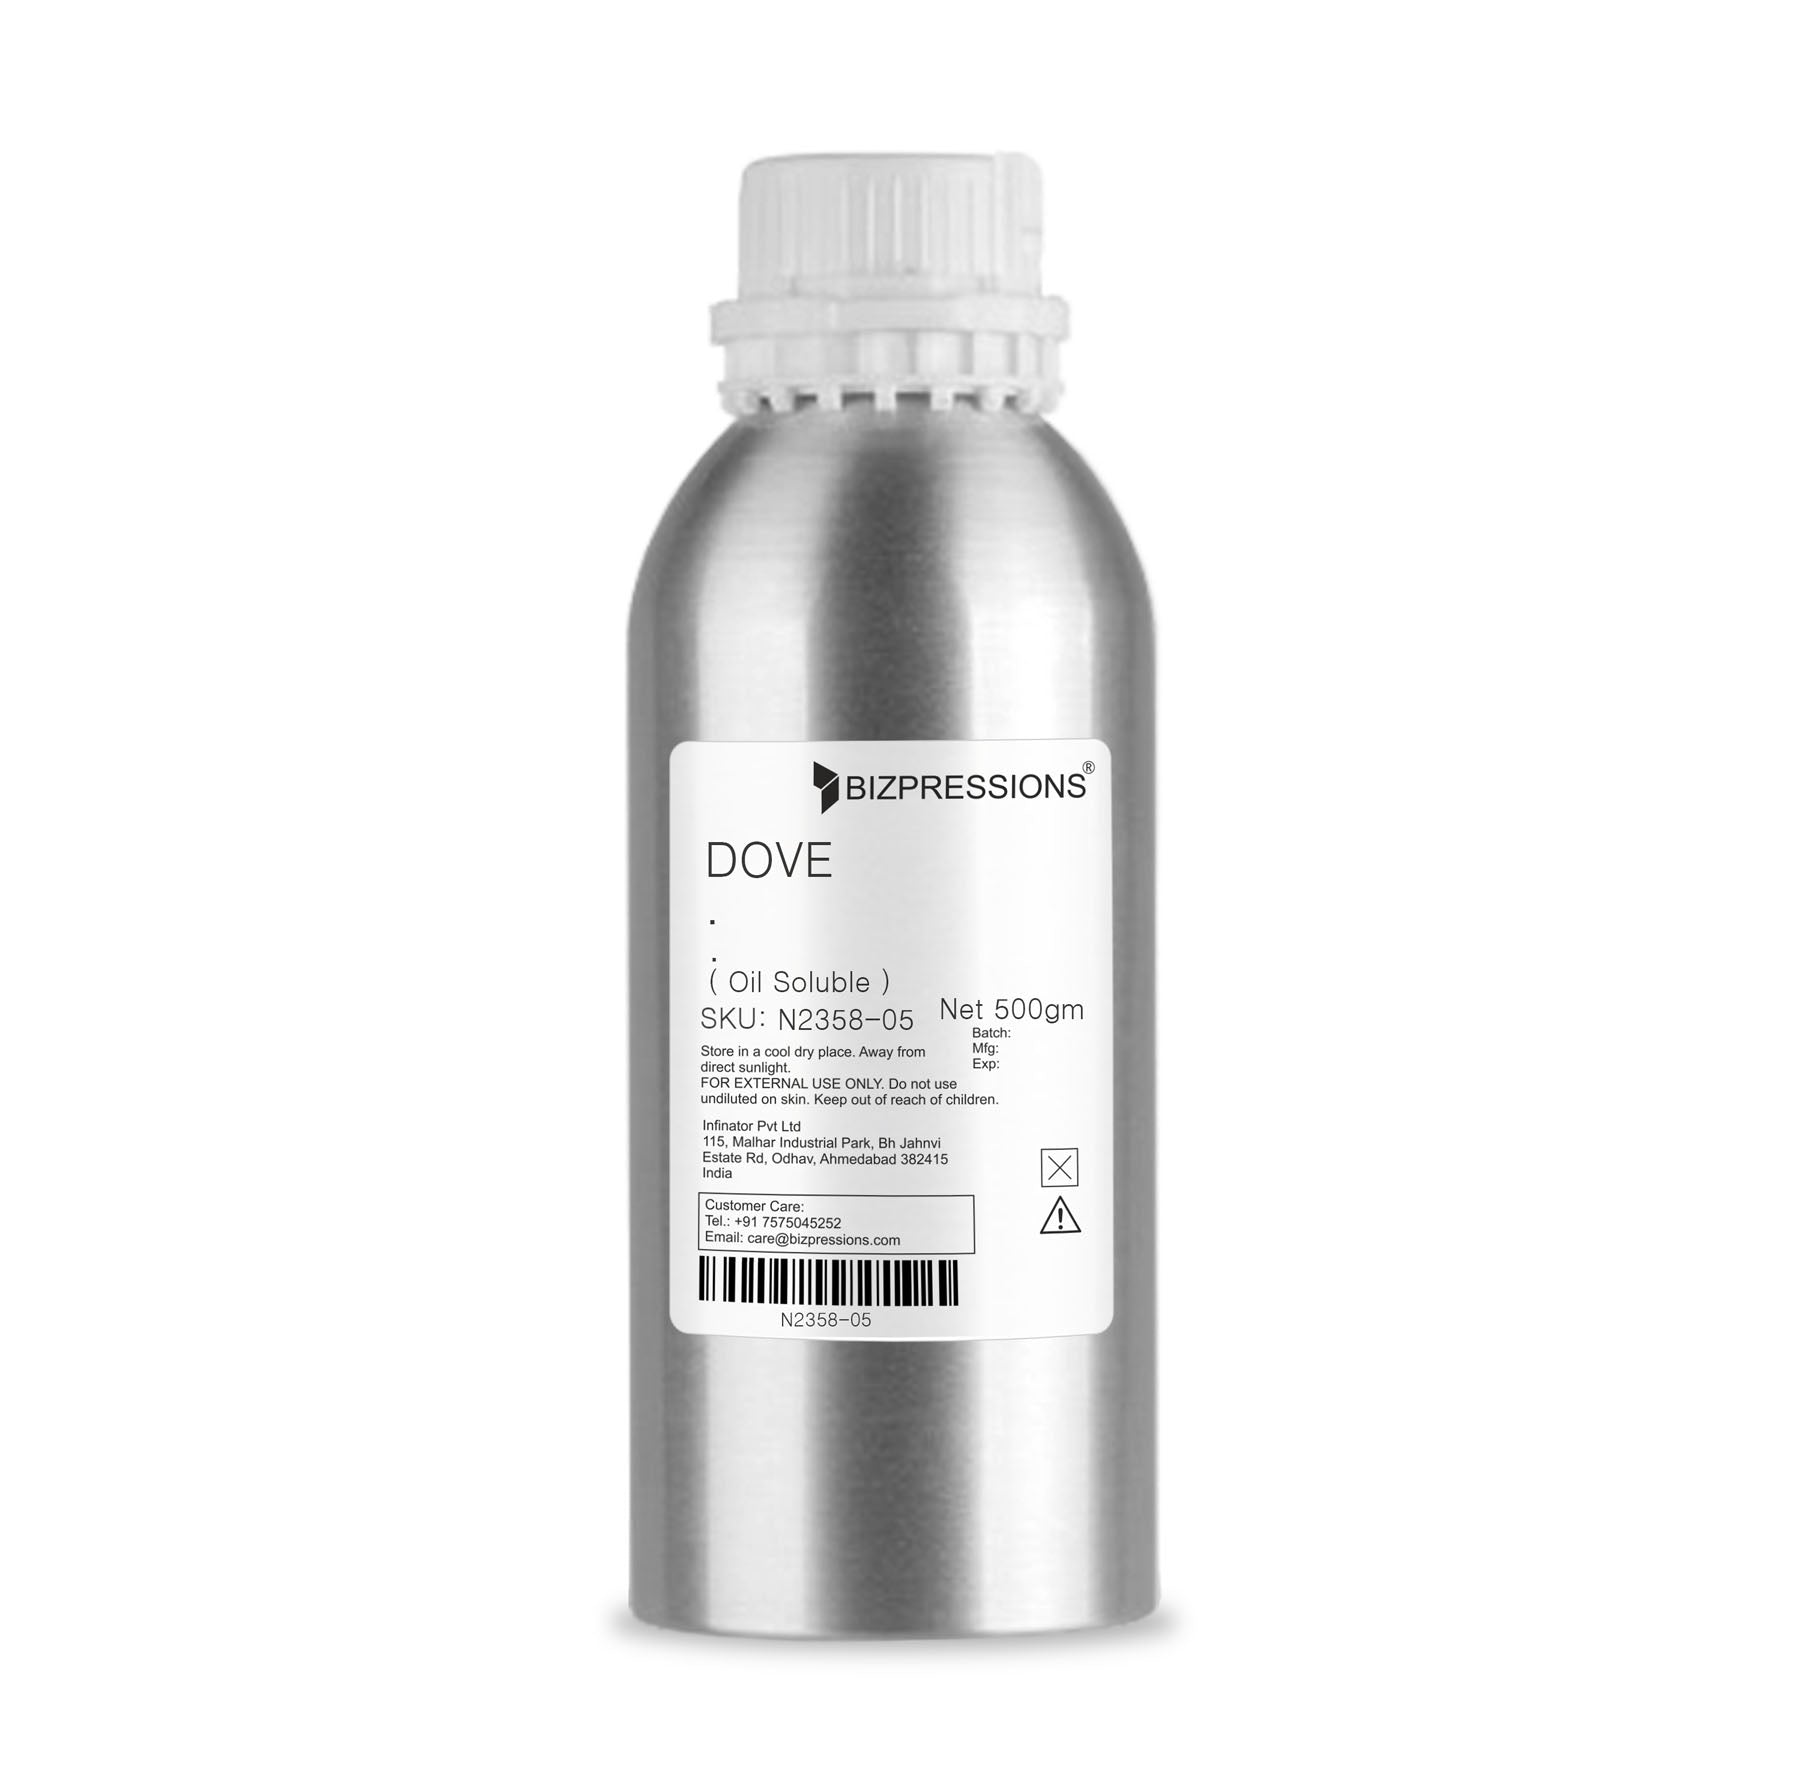 DOVE - Fragrance ( Oil Soluble ) - 500 gm